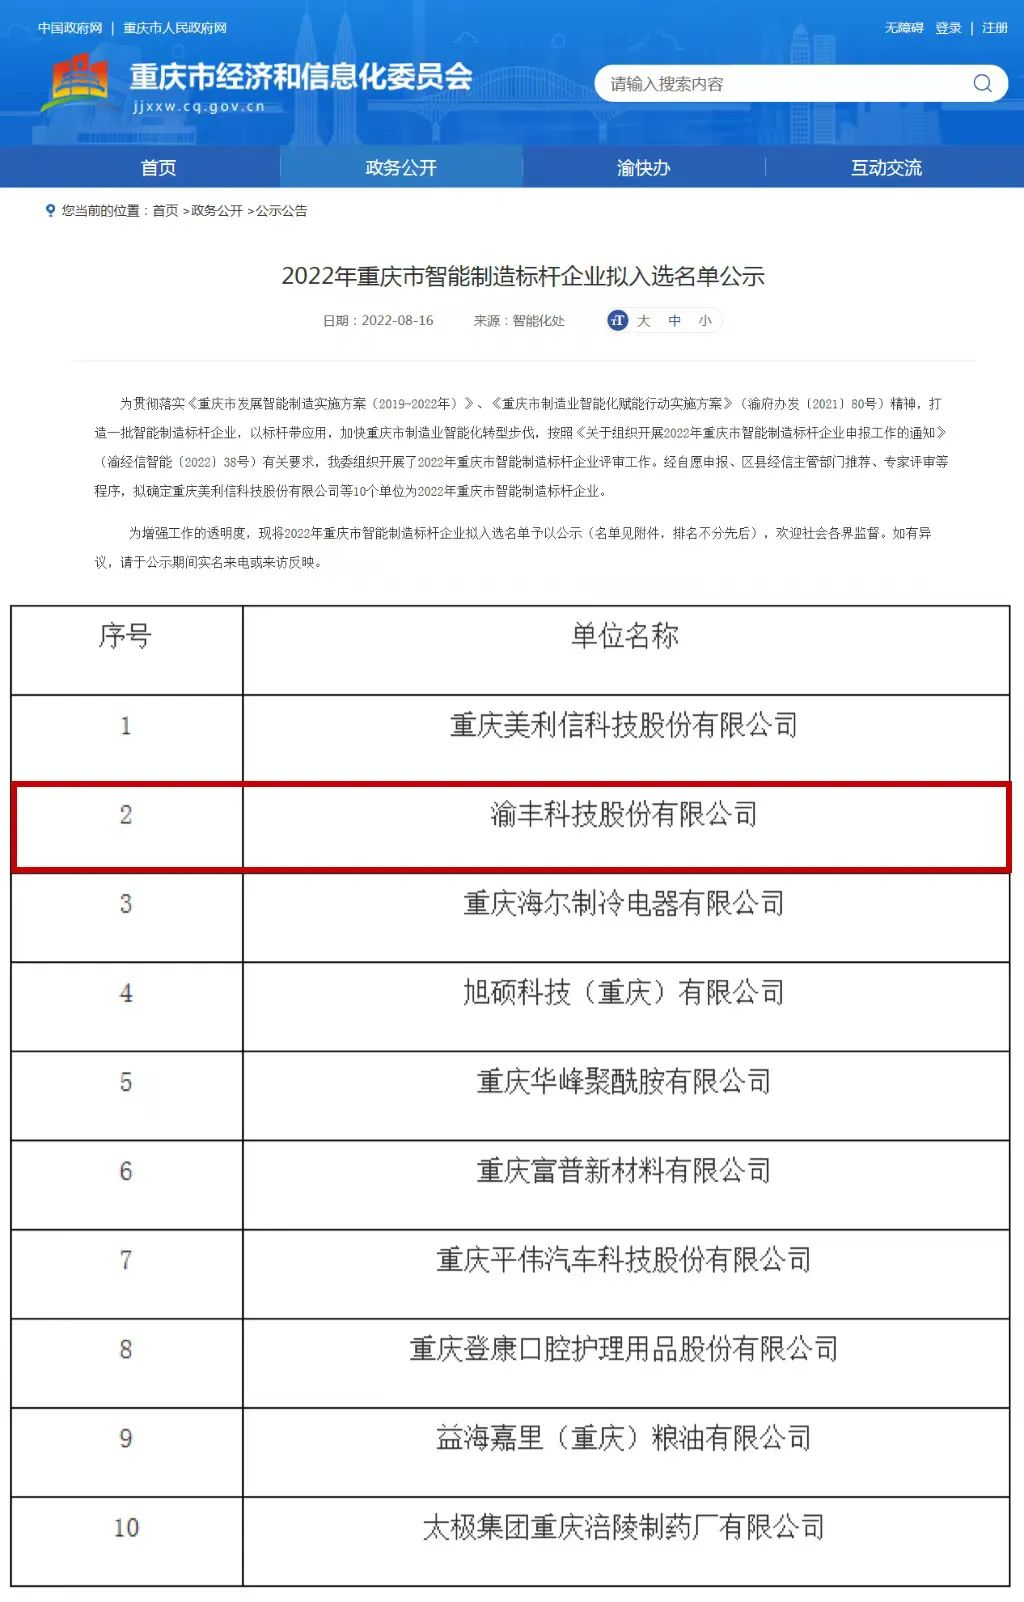 渝丰科技获评2022年重庆市智能制造标杆企业1.png